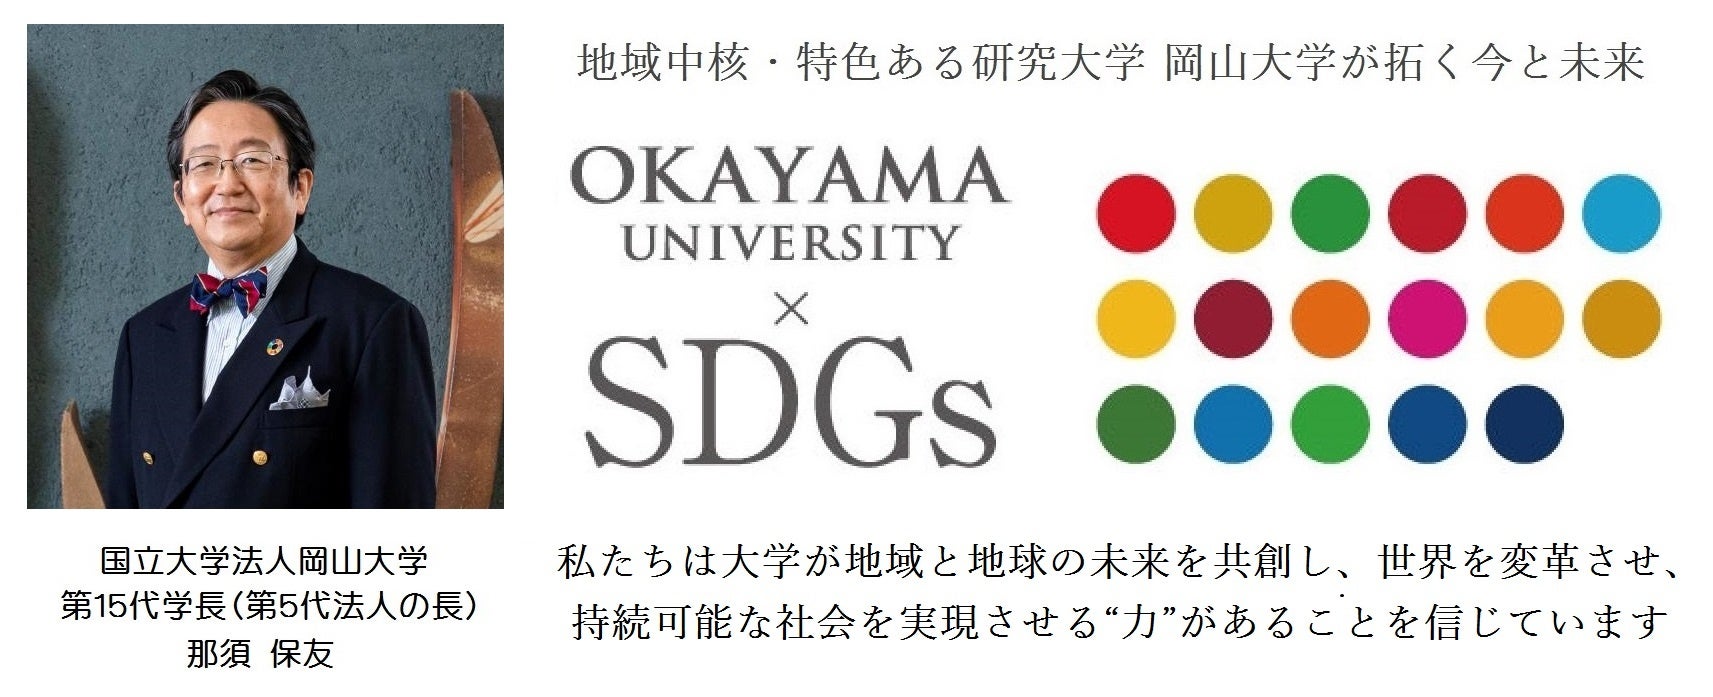 【岡山大学】若者の参画を議論「三都市シンポジウム」を開催